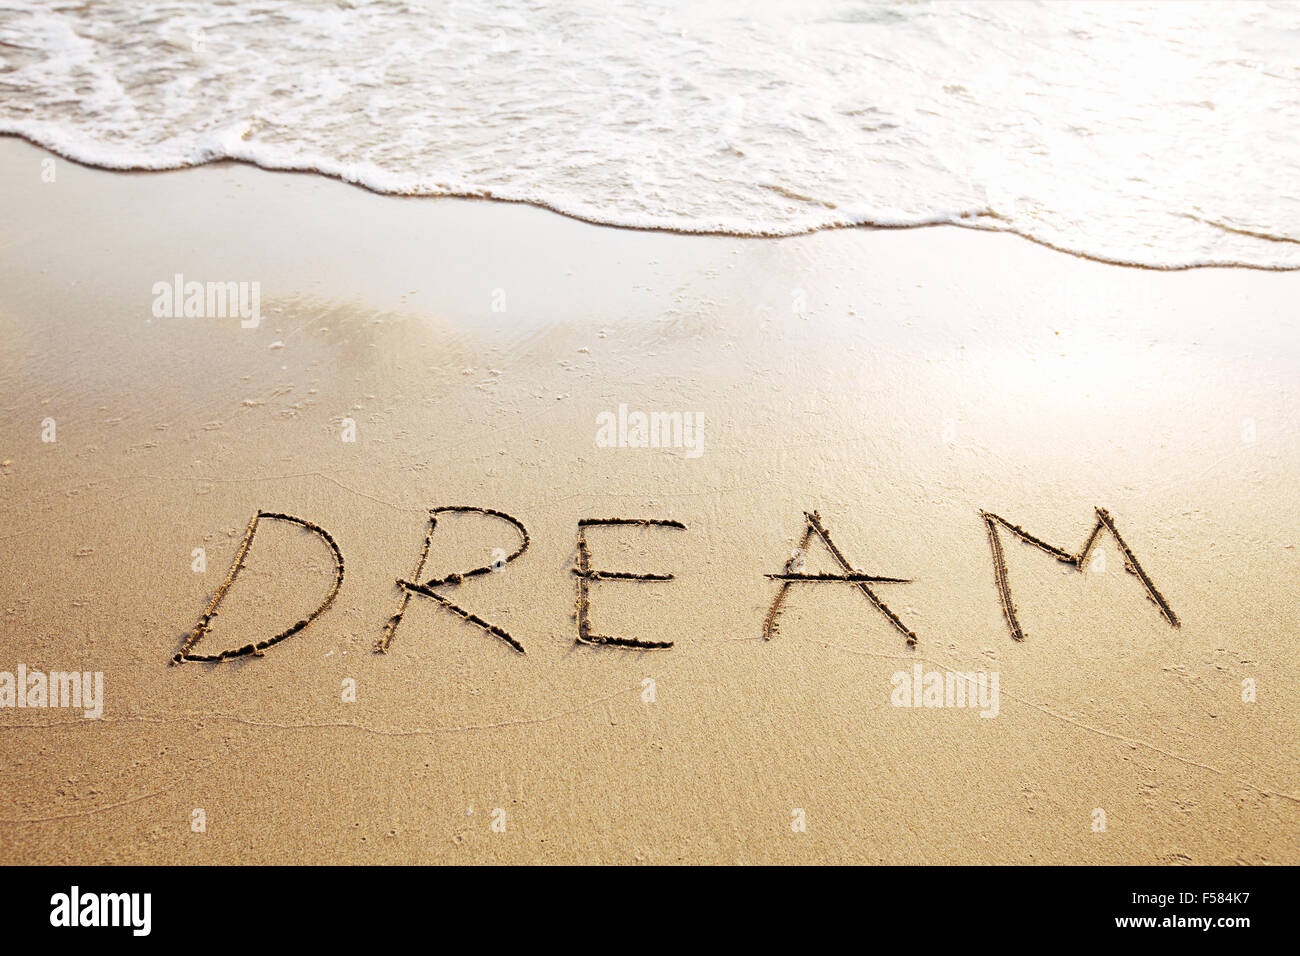 Dream - mot écrit sur la plage Banque D'Images